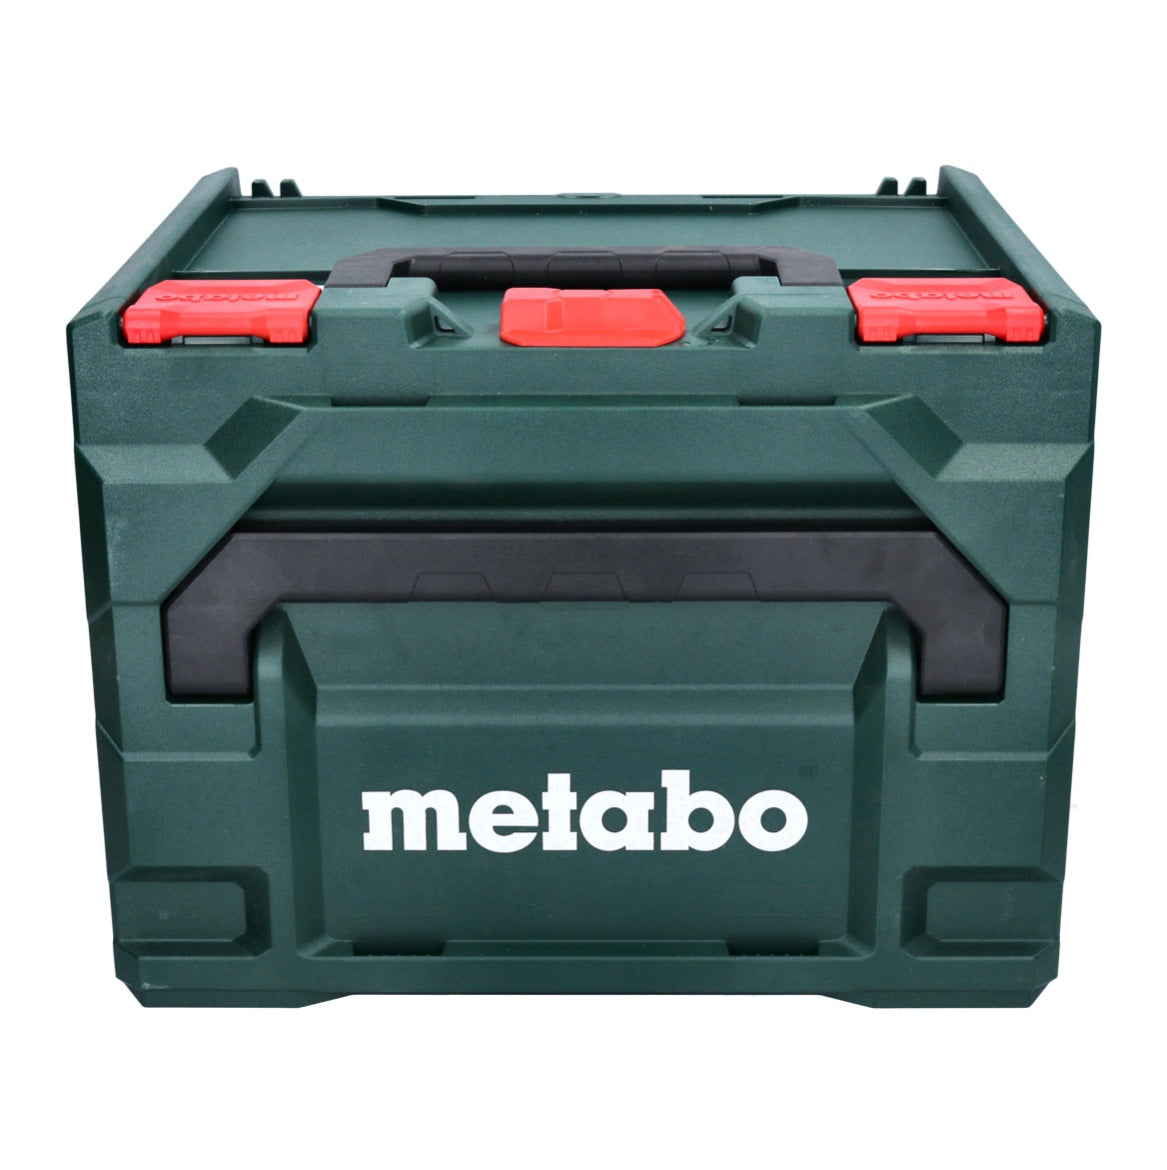 Metabo KS 18 LTX 57 Akku Handkreissäge 18 V 165 mm + 2x Akku 5,5 Ah + Ladegerät + metaBOX - Toolbrothers